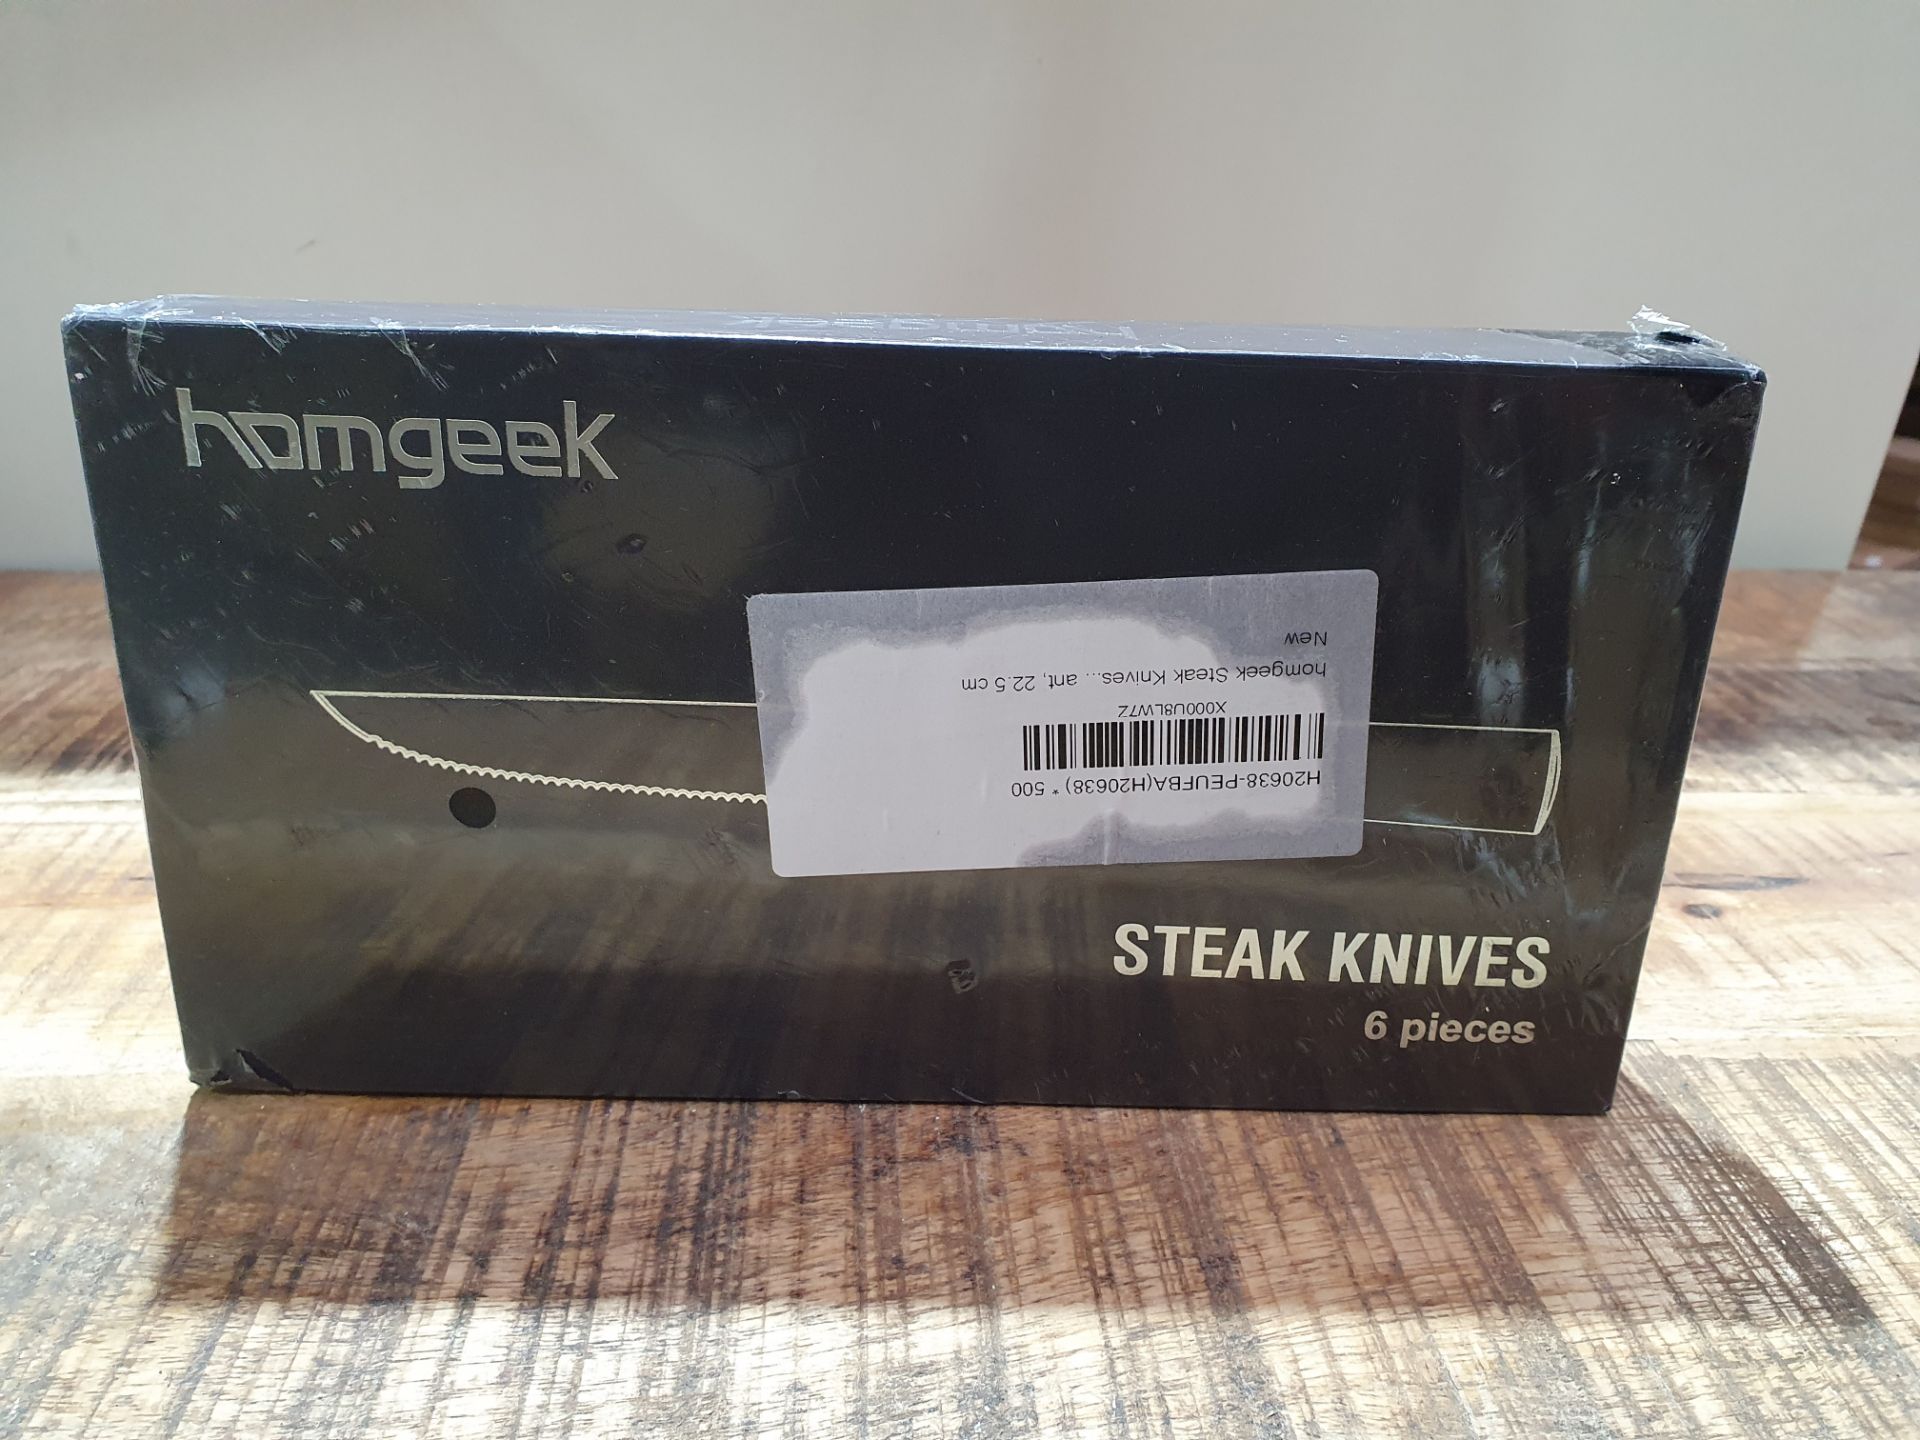 HOMGEEK STEAK KNIVES 6 PIECES RRP £34.99